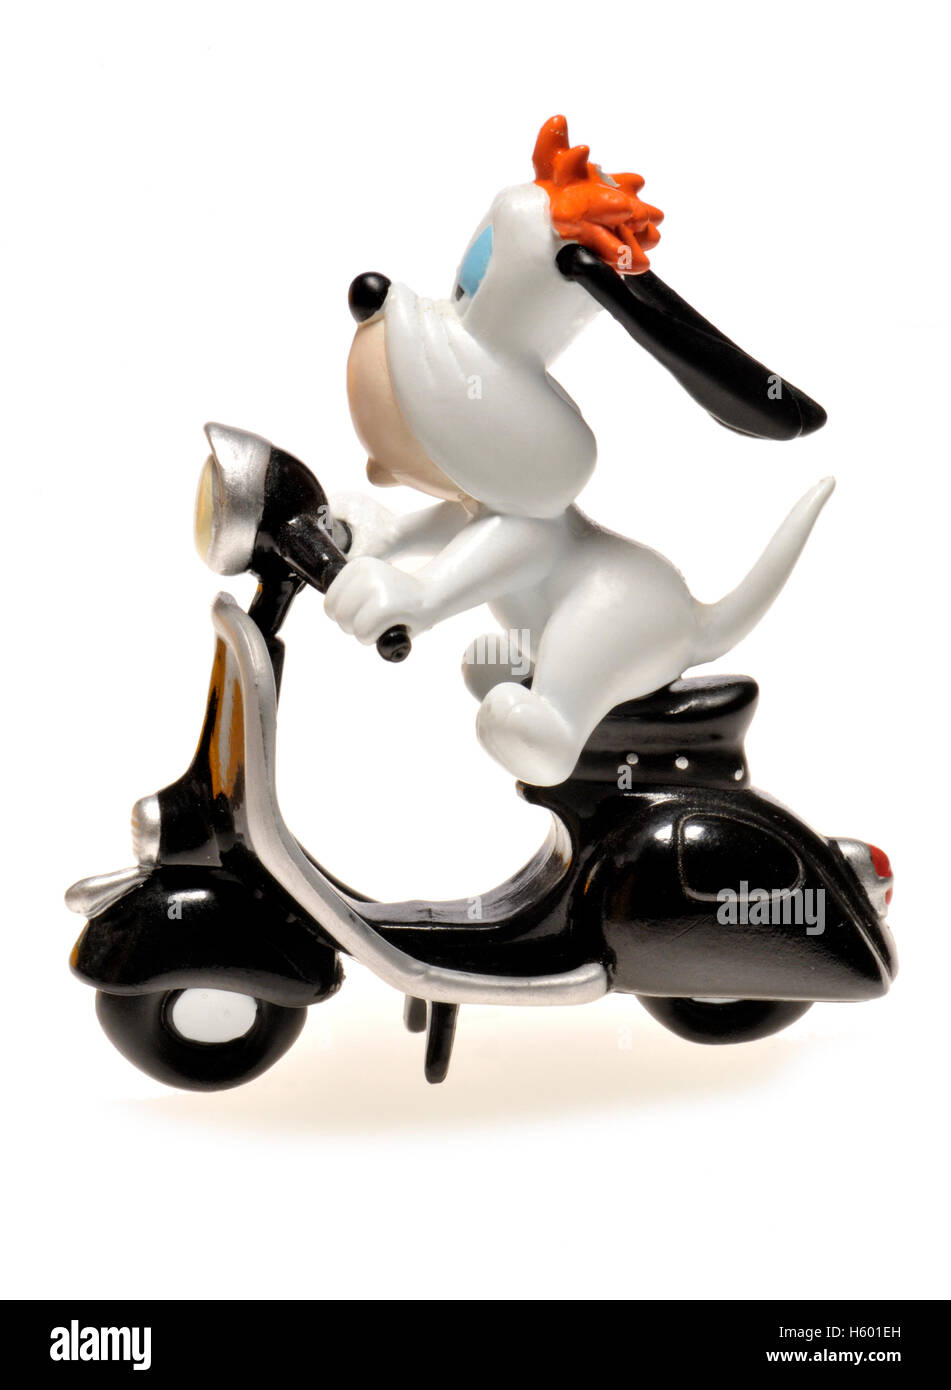 Personaggio dei fumetti - figurine di droopy (MGM) a cavallo di un scooter Foto Stock